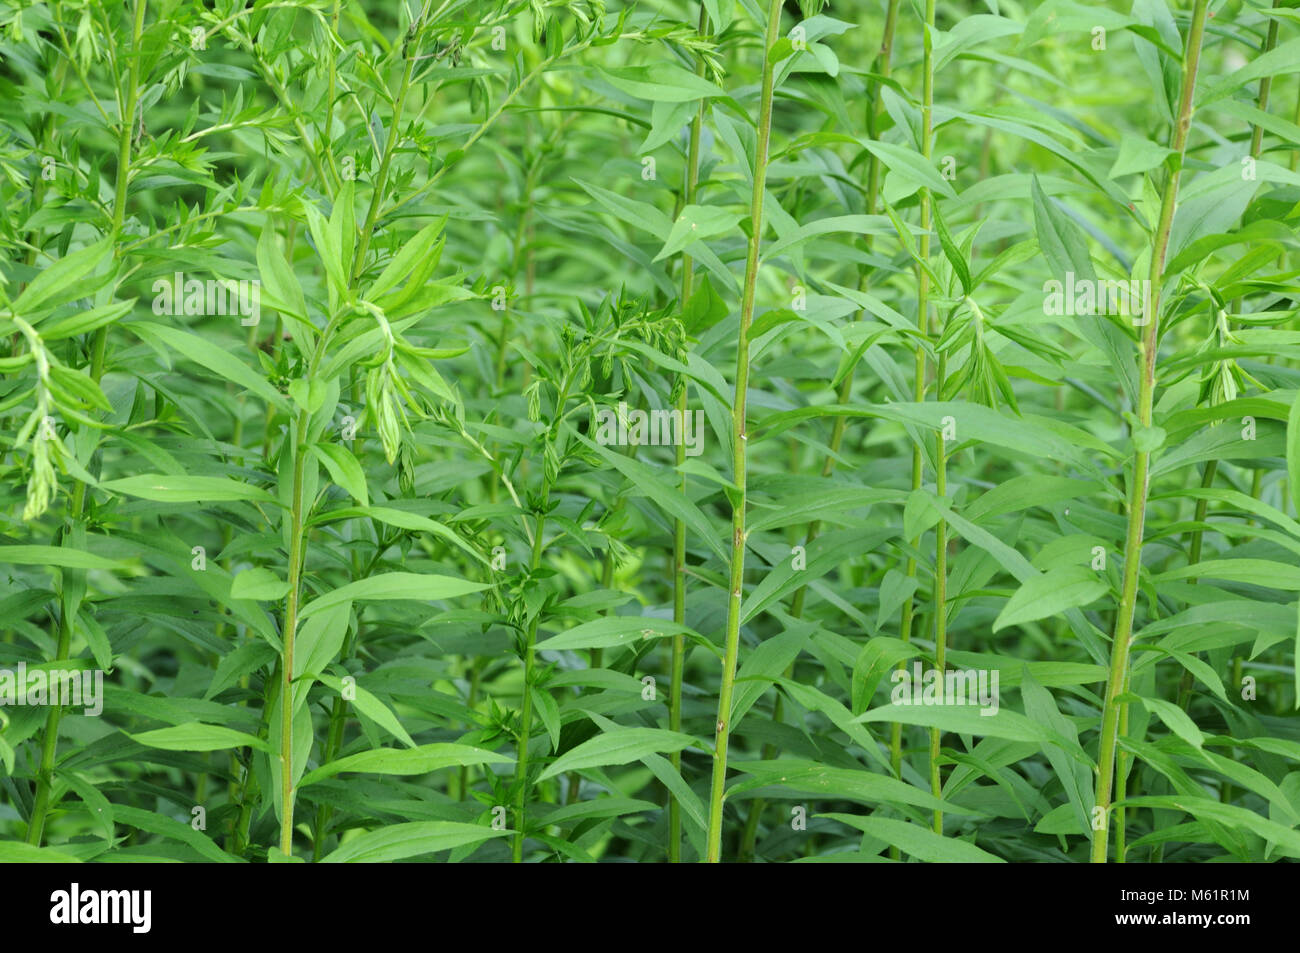 green foliage of willowherb Stock Photo